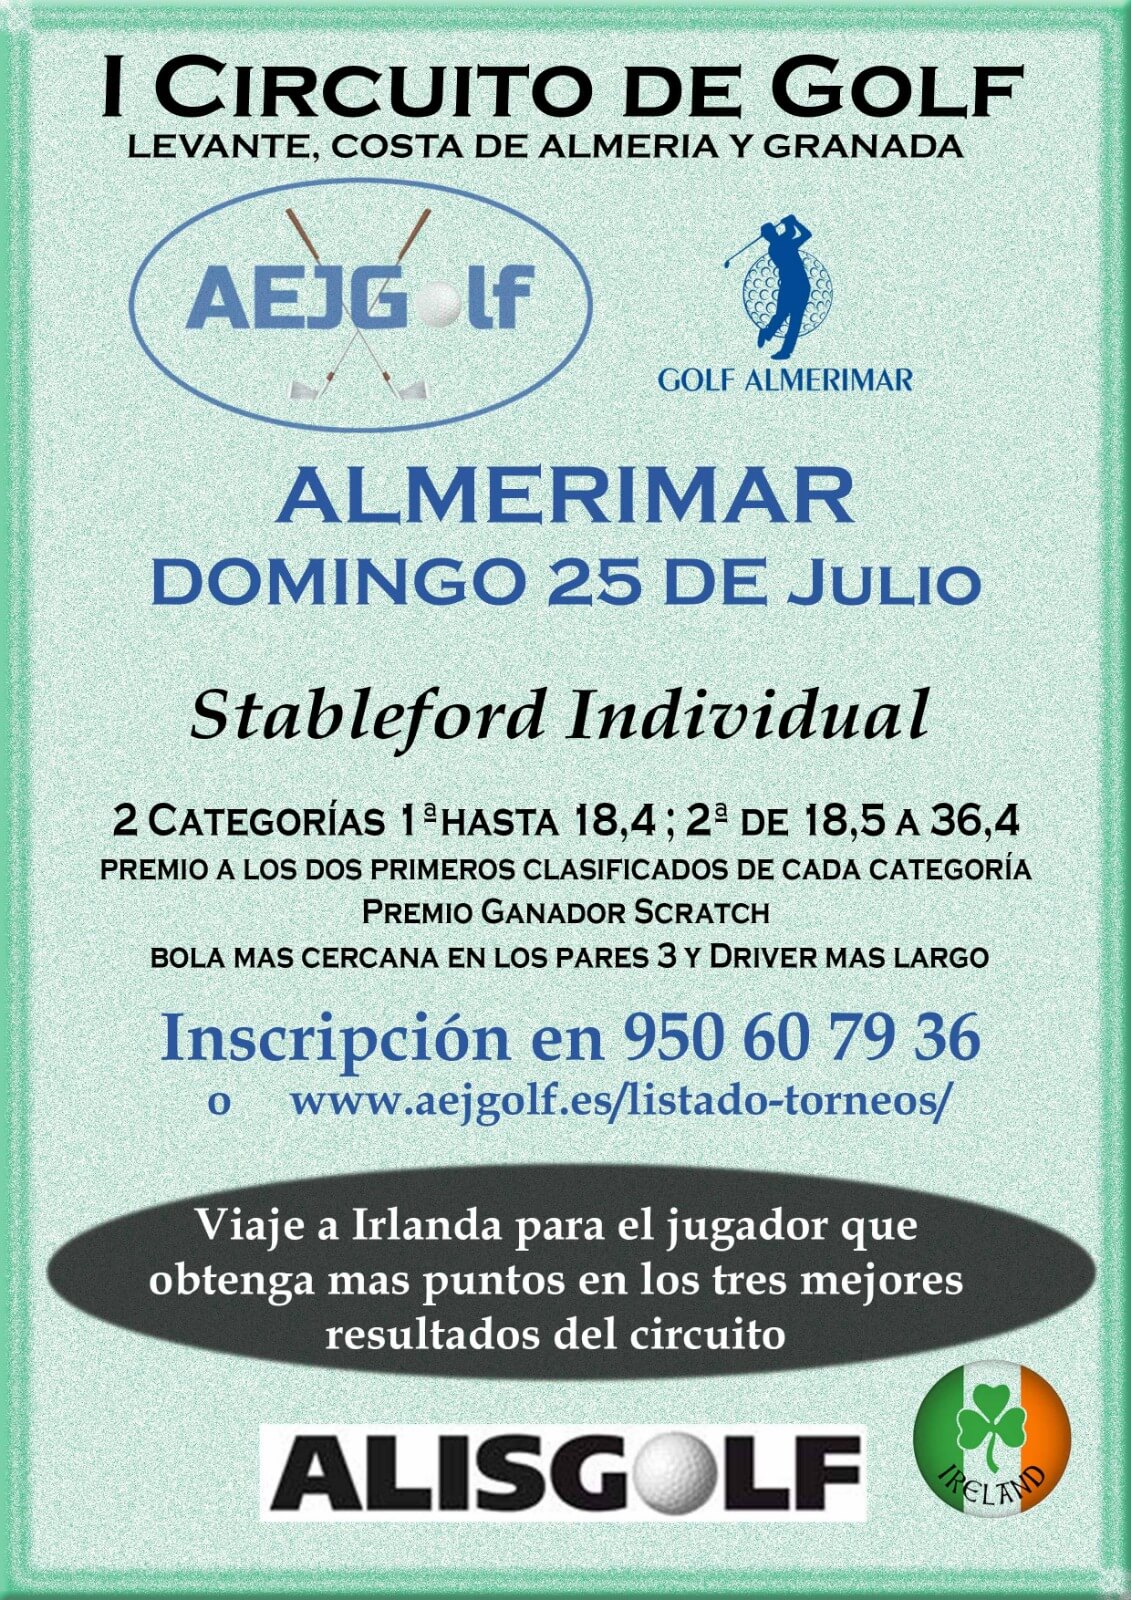 I Circuito de Golf Levante, Costa de Almería y Granada CLUB DE GOLF ALMERIMAR